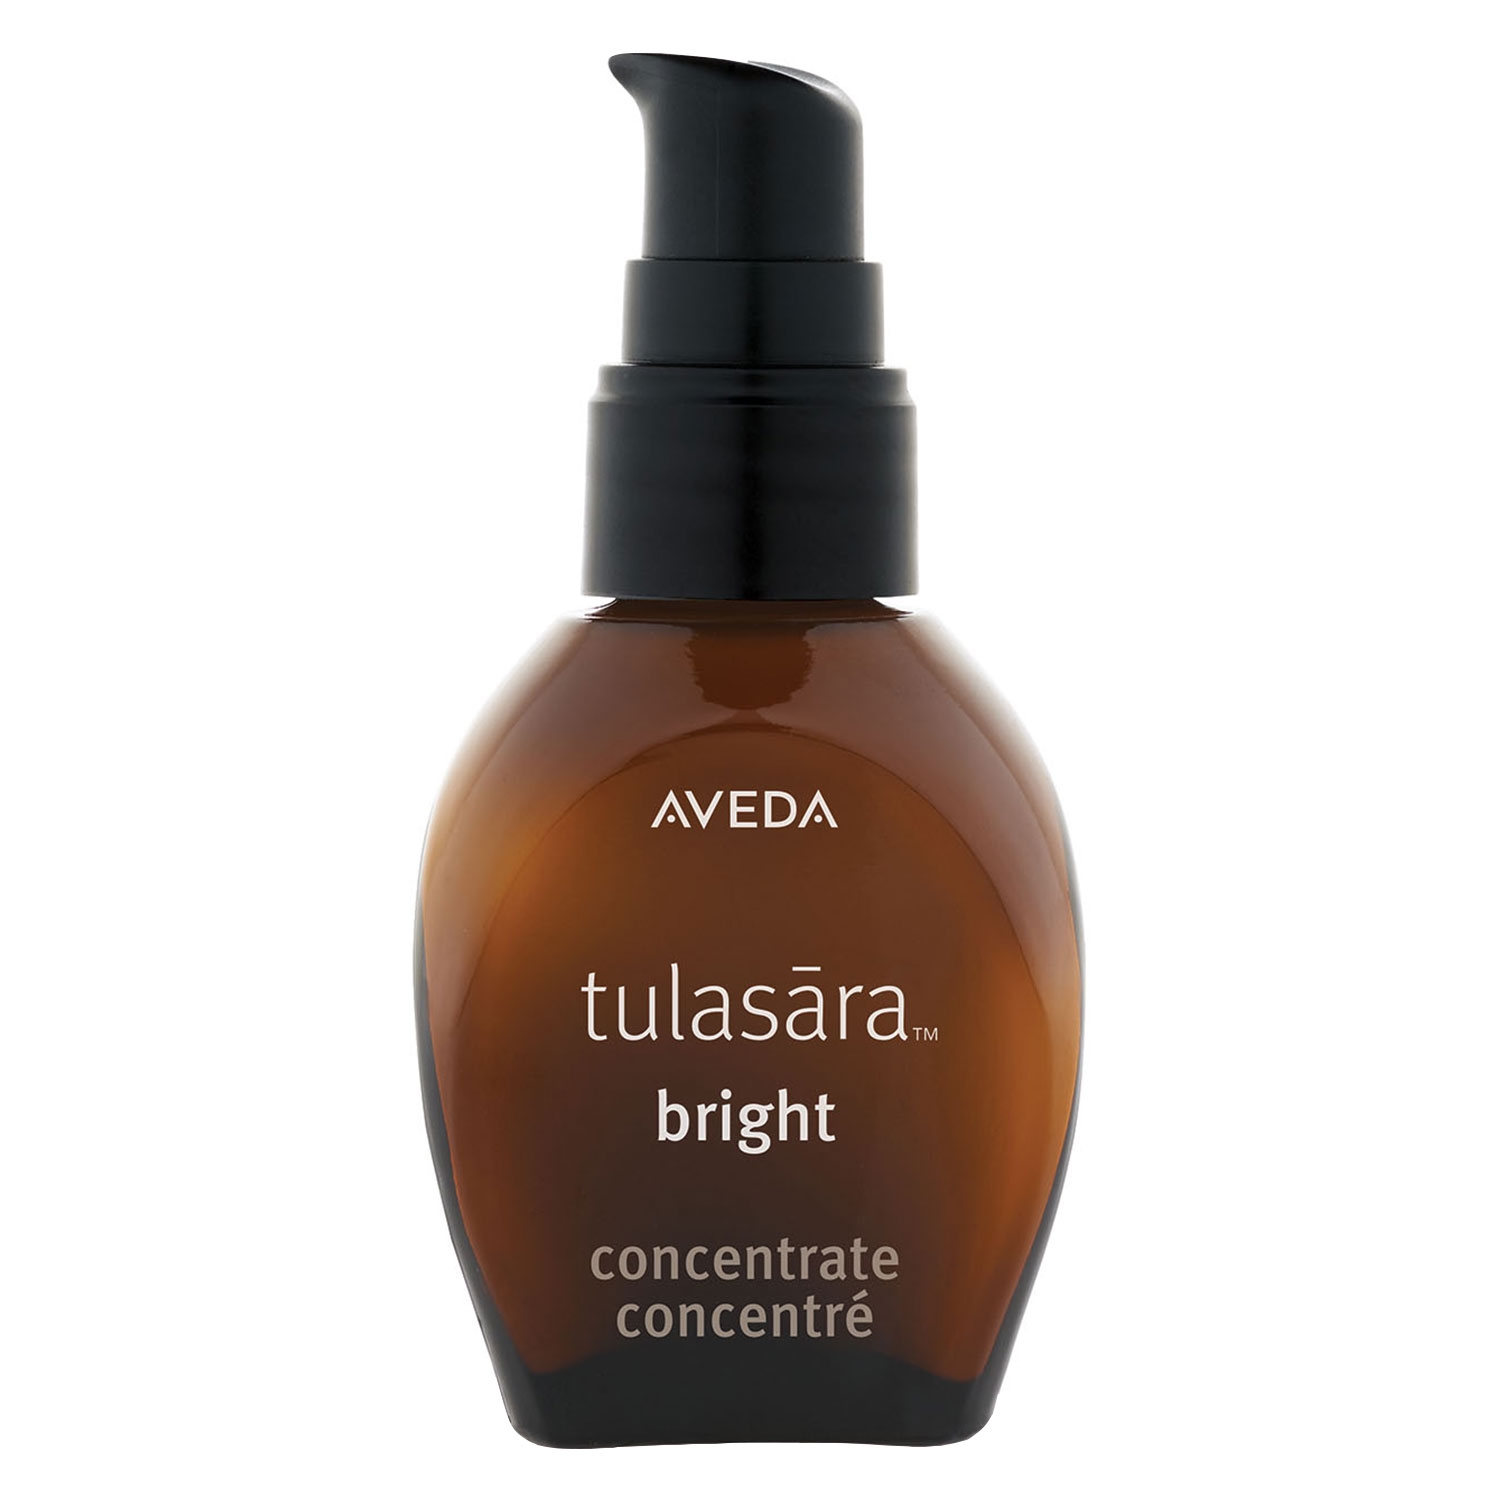 Produktbild von tulasara - bright concentrate